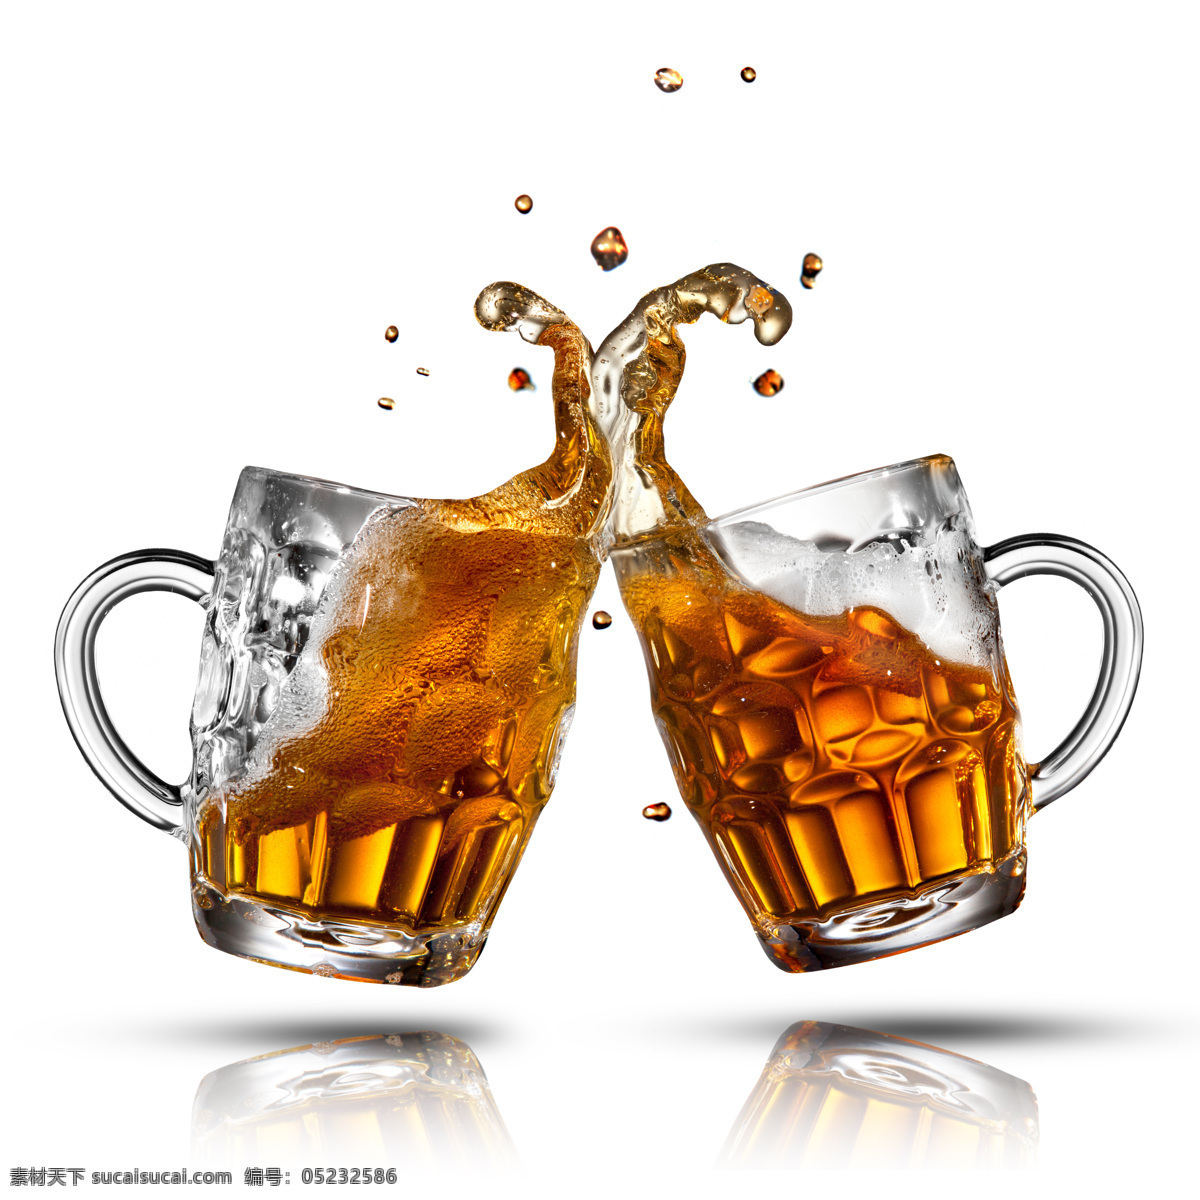 啤酒图片素材 饮料 酒类 啤酒 啤酒杯 干杯 碰杯 泡沫 水花 溅出 酒类图片 餐饮美食